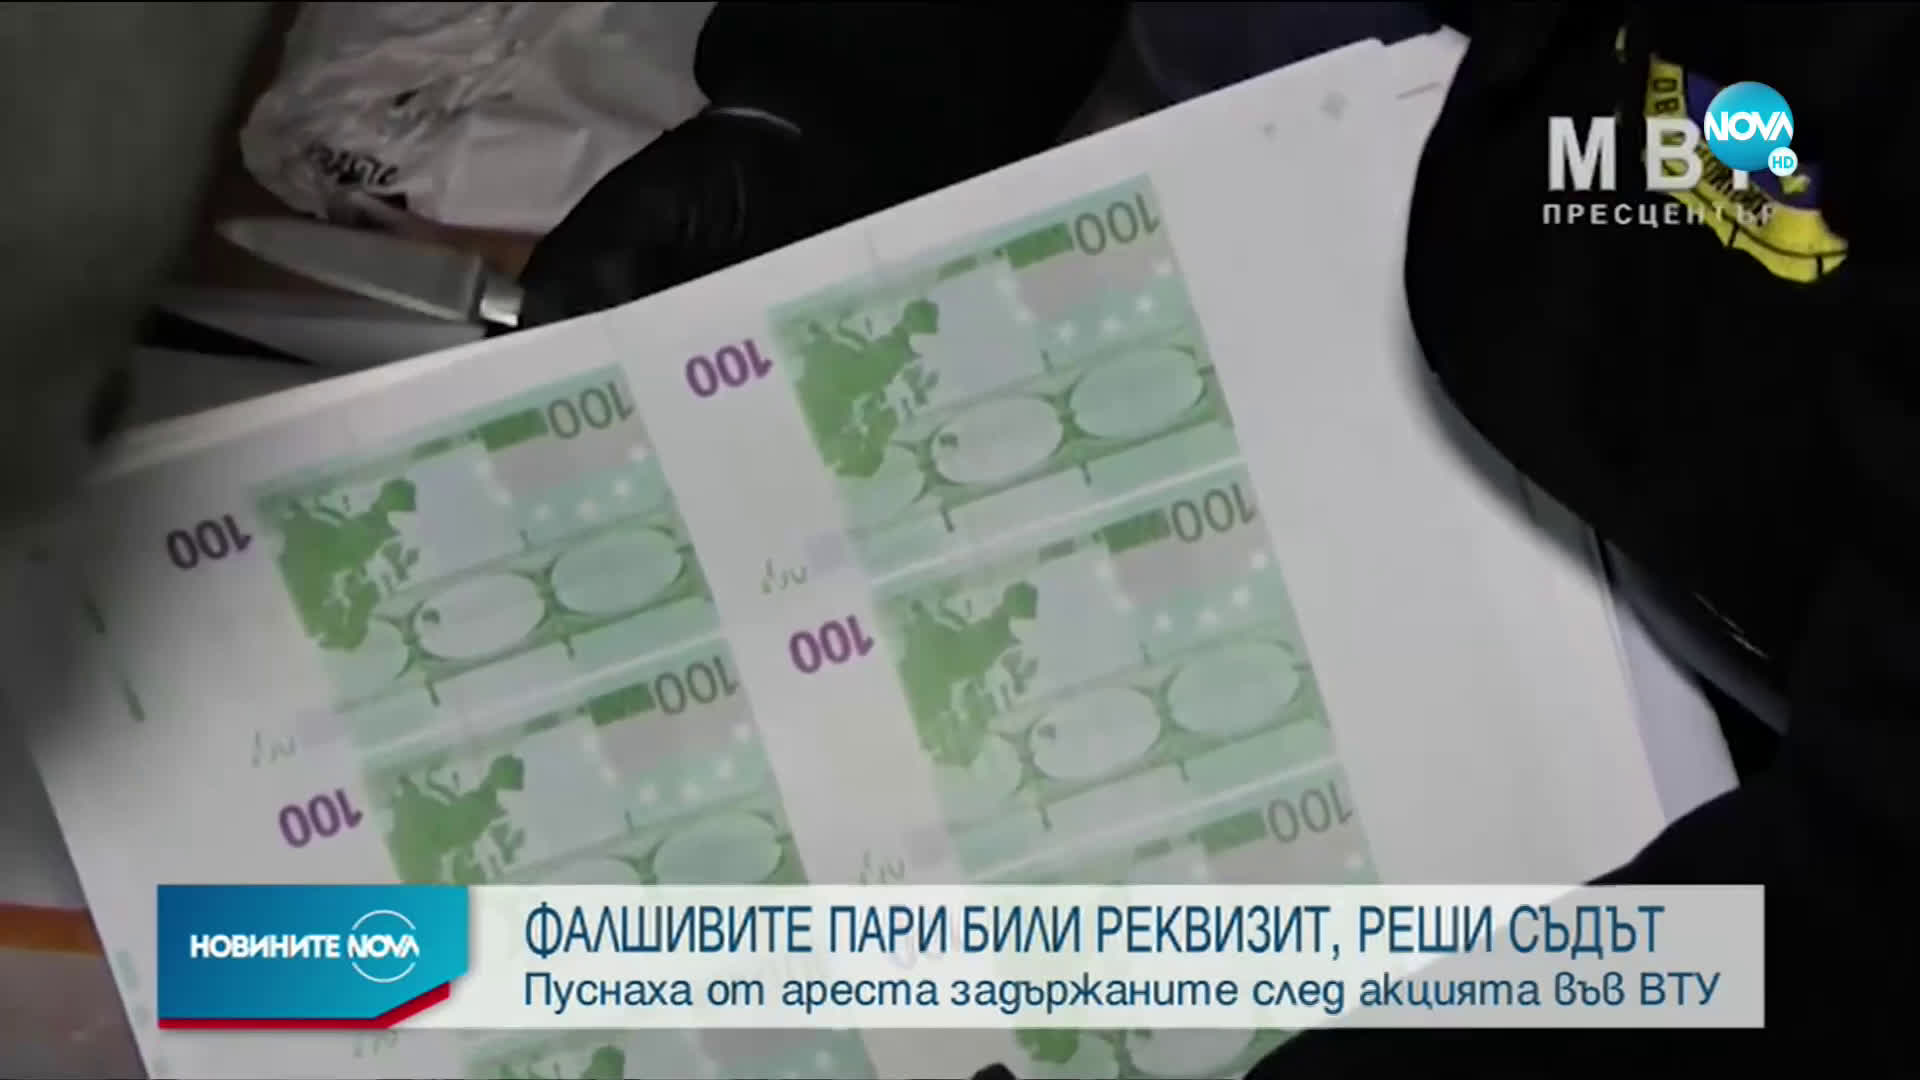 Хванатите с милиони фалшиви пари: Банкнотите бяха реквизит за сватби и кръщенета